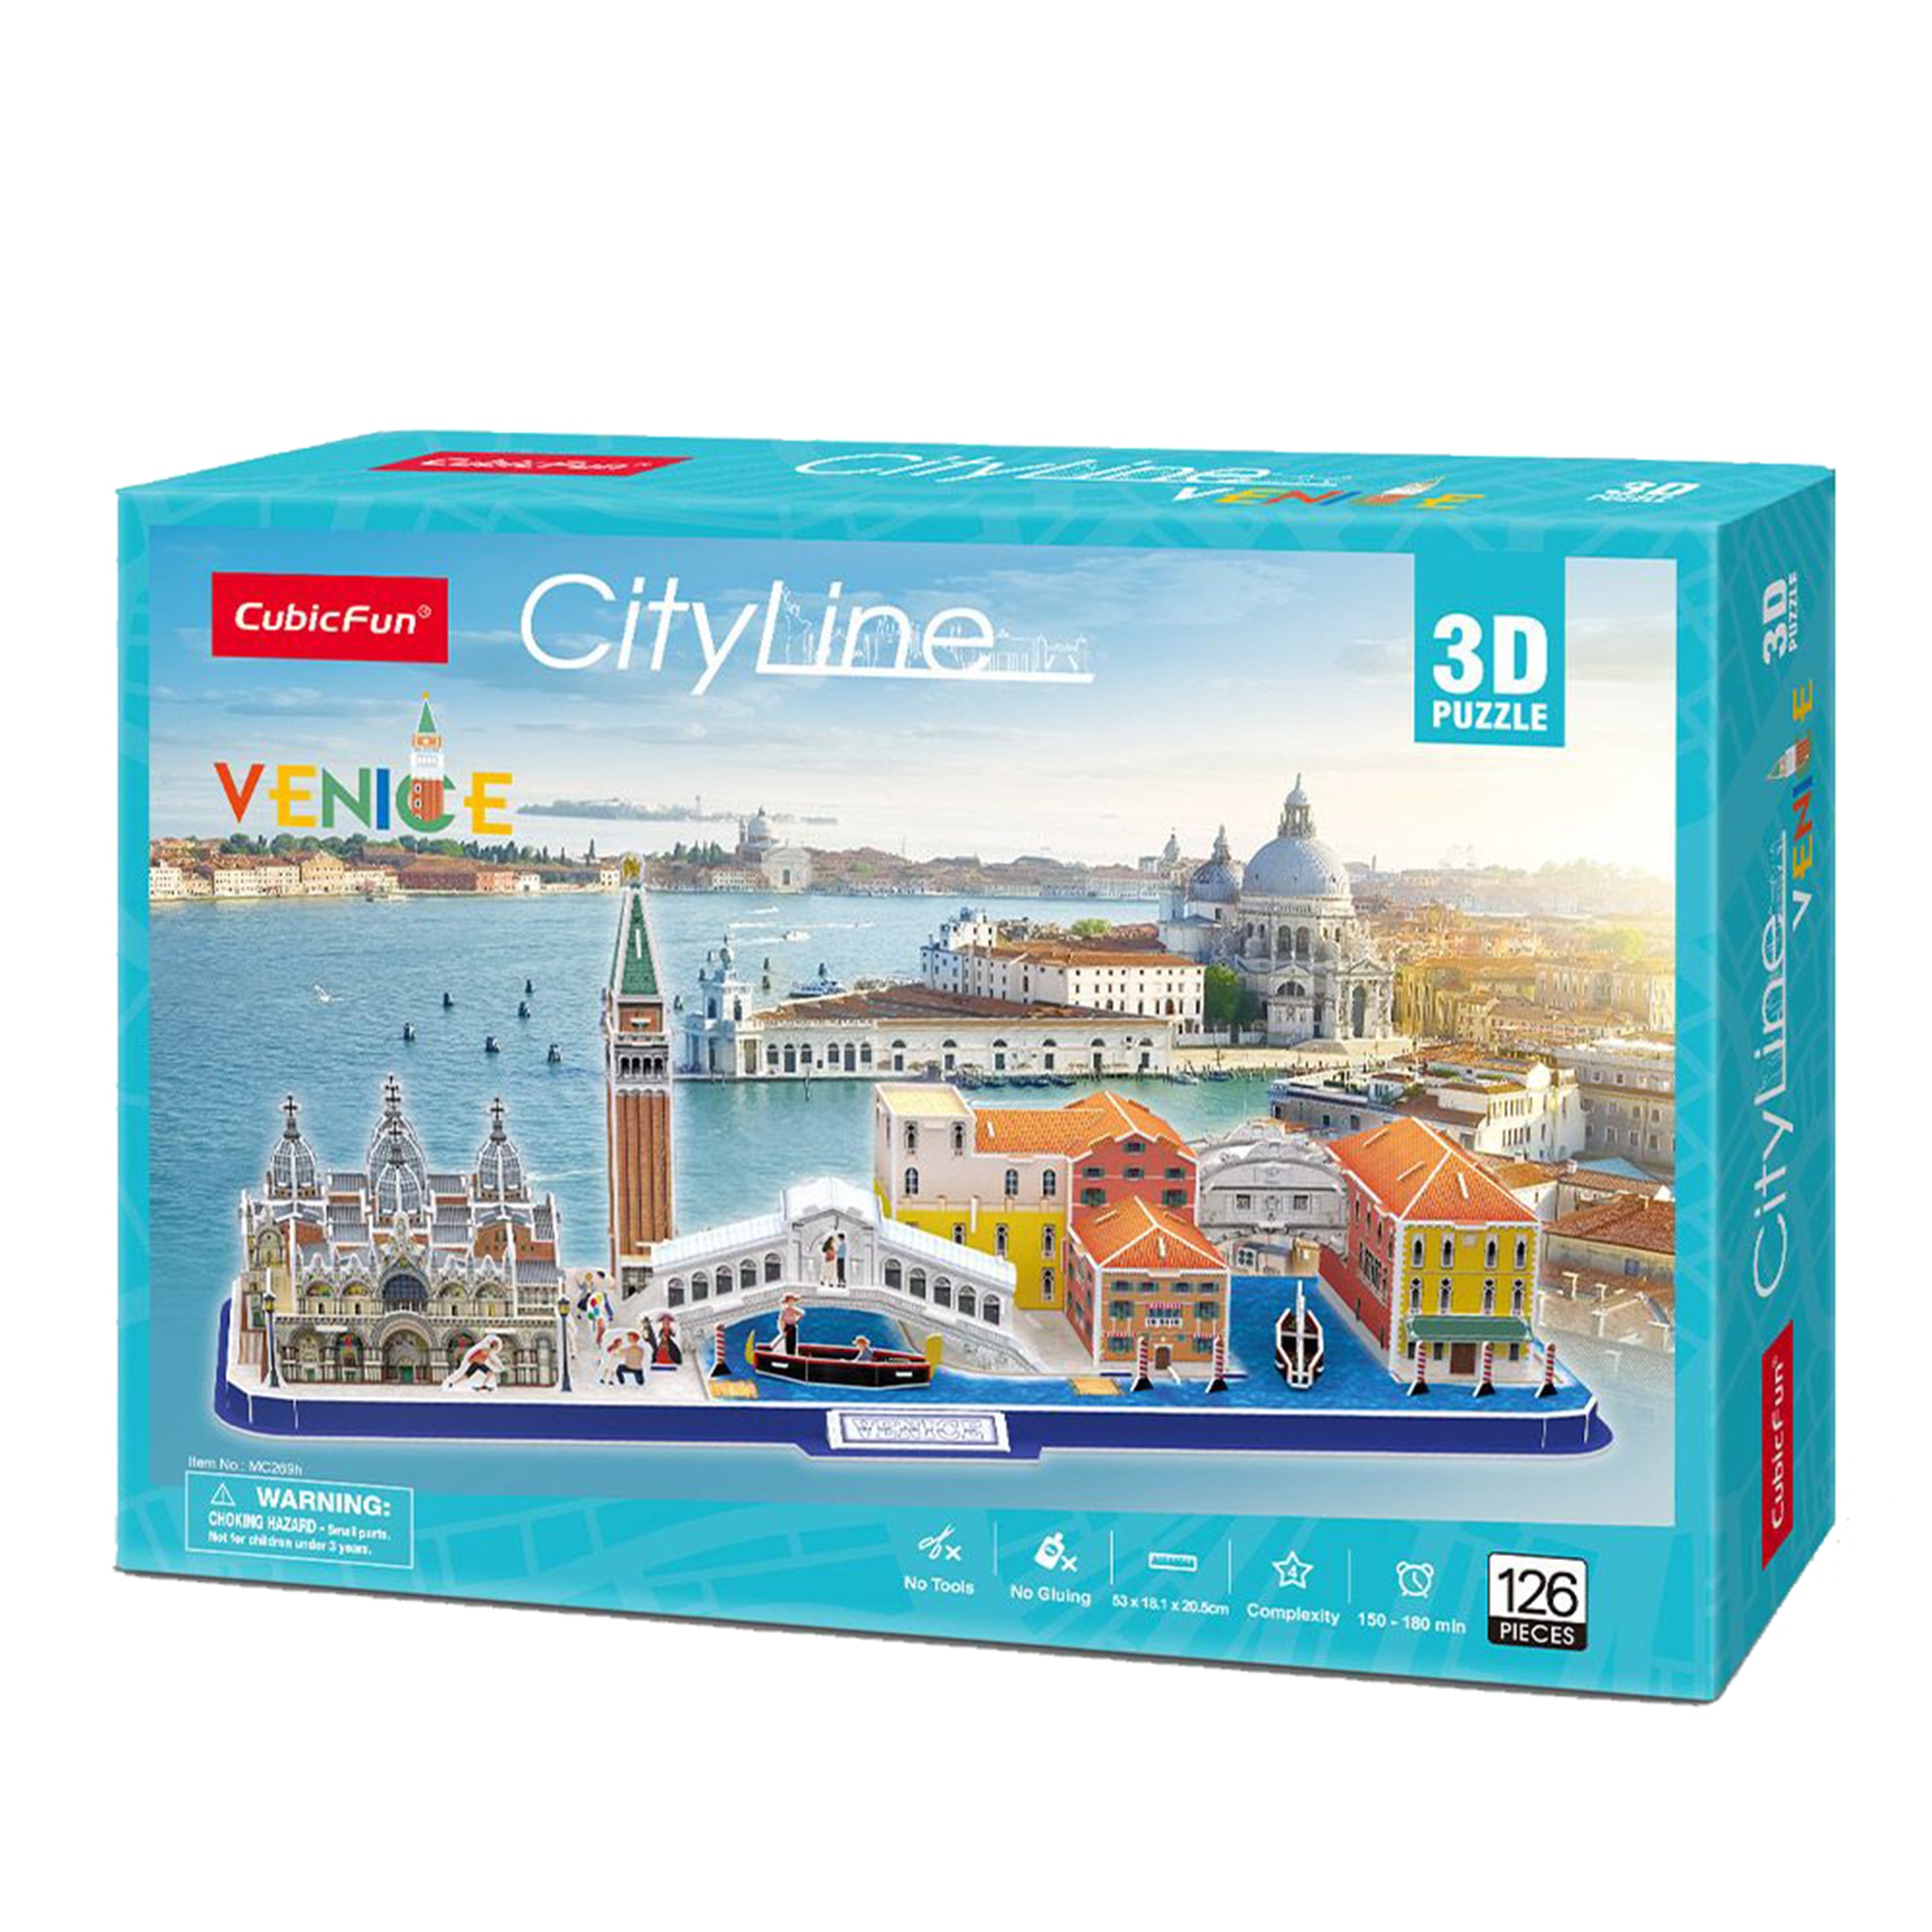 Puzzle 3D - City Line - Venetia, 126 piese | Cubic Fun